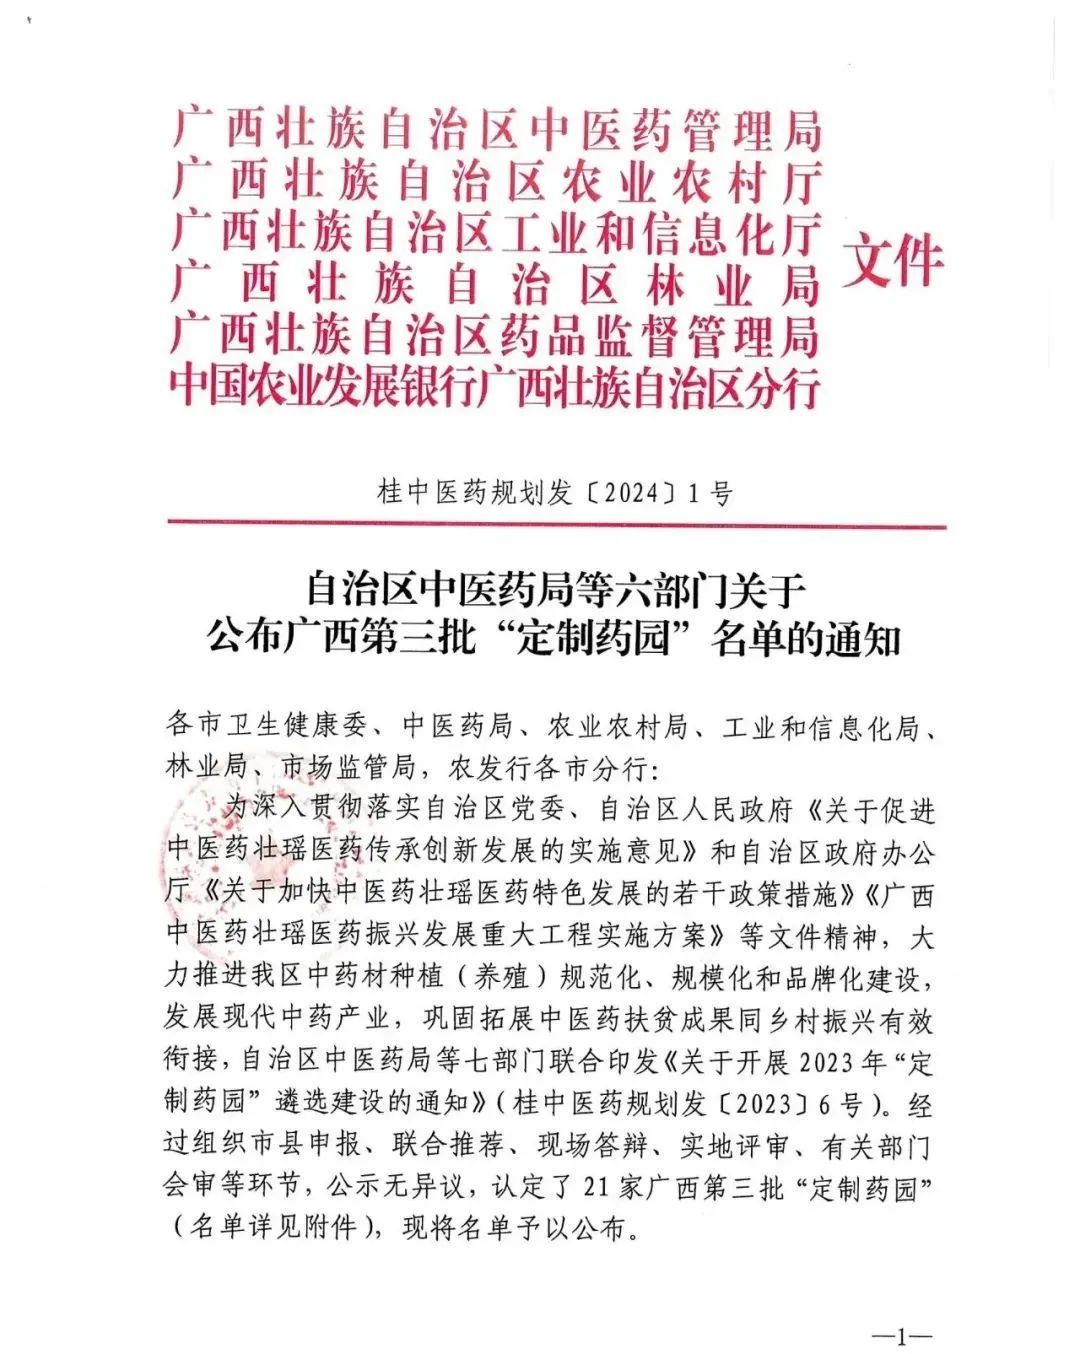 集团钩藤中药材示范基地（市级）获认定为广西第三批“定制药园”